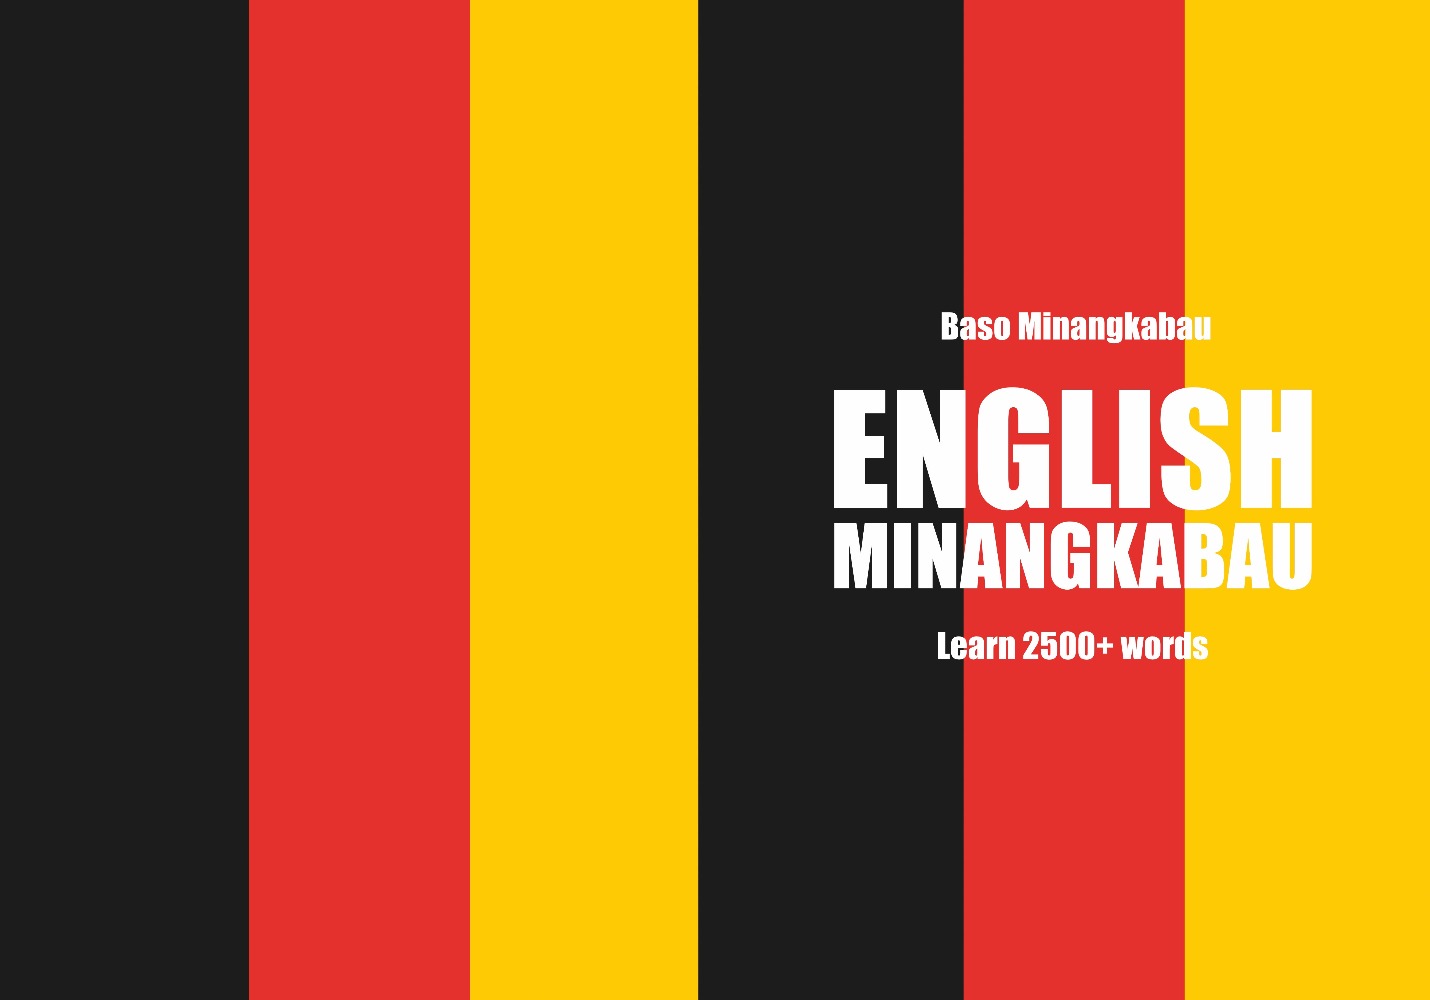 Minangkabau language learning notebook cover